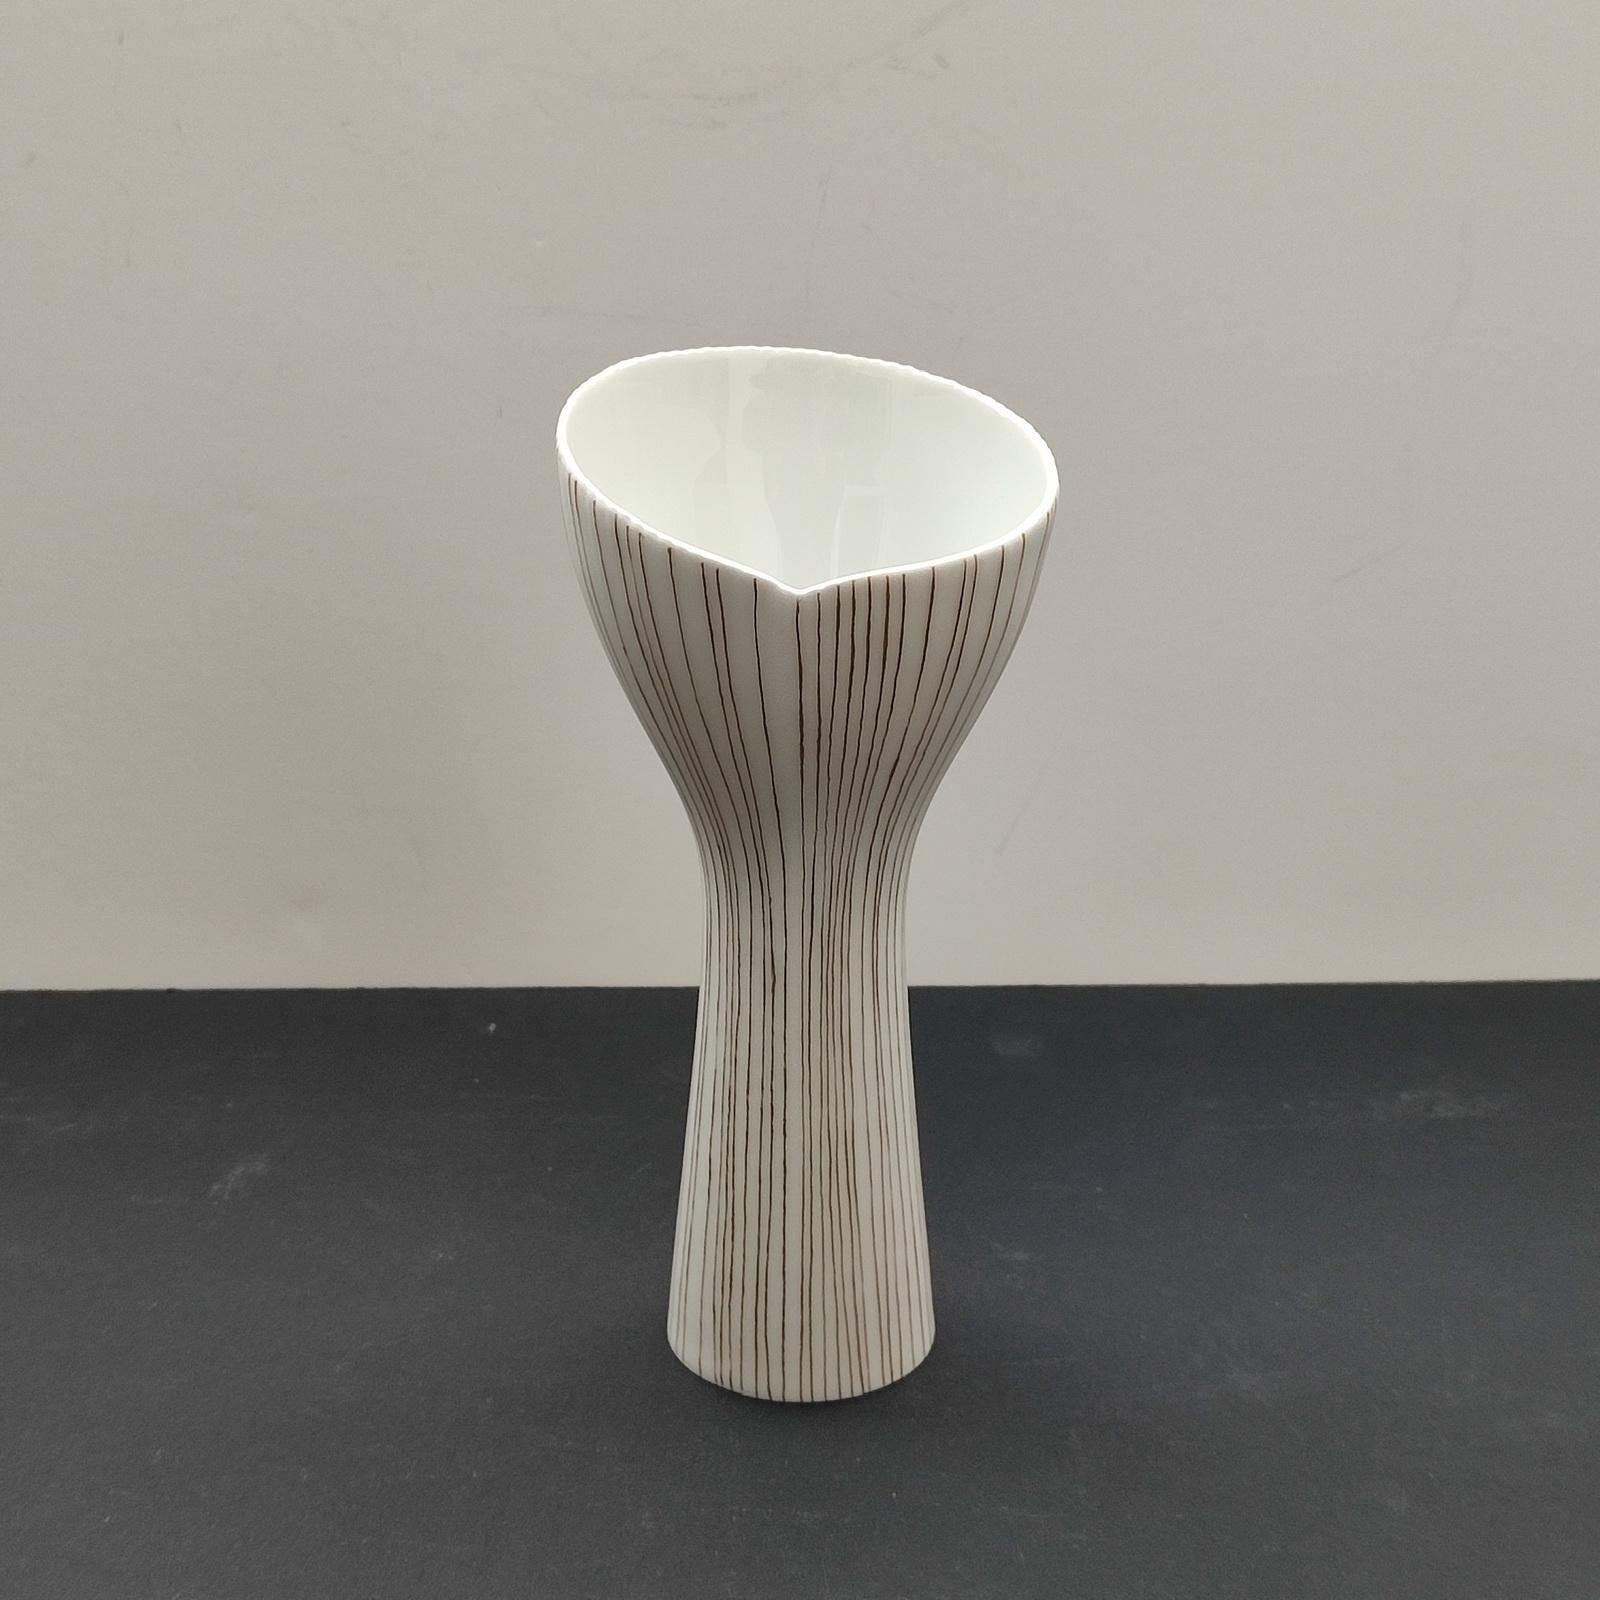 Tapio Wirkkala pour Rosenthal, Allemagne
Vase à large bouche en porcelaine blanche, bord côtelé, peint à la main avec de fines lignes dorées. Très bon état d'usage.
Dimensions :
Hauteur 17 cm [6 3/4